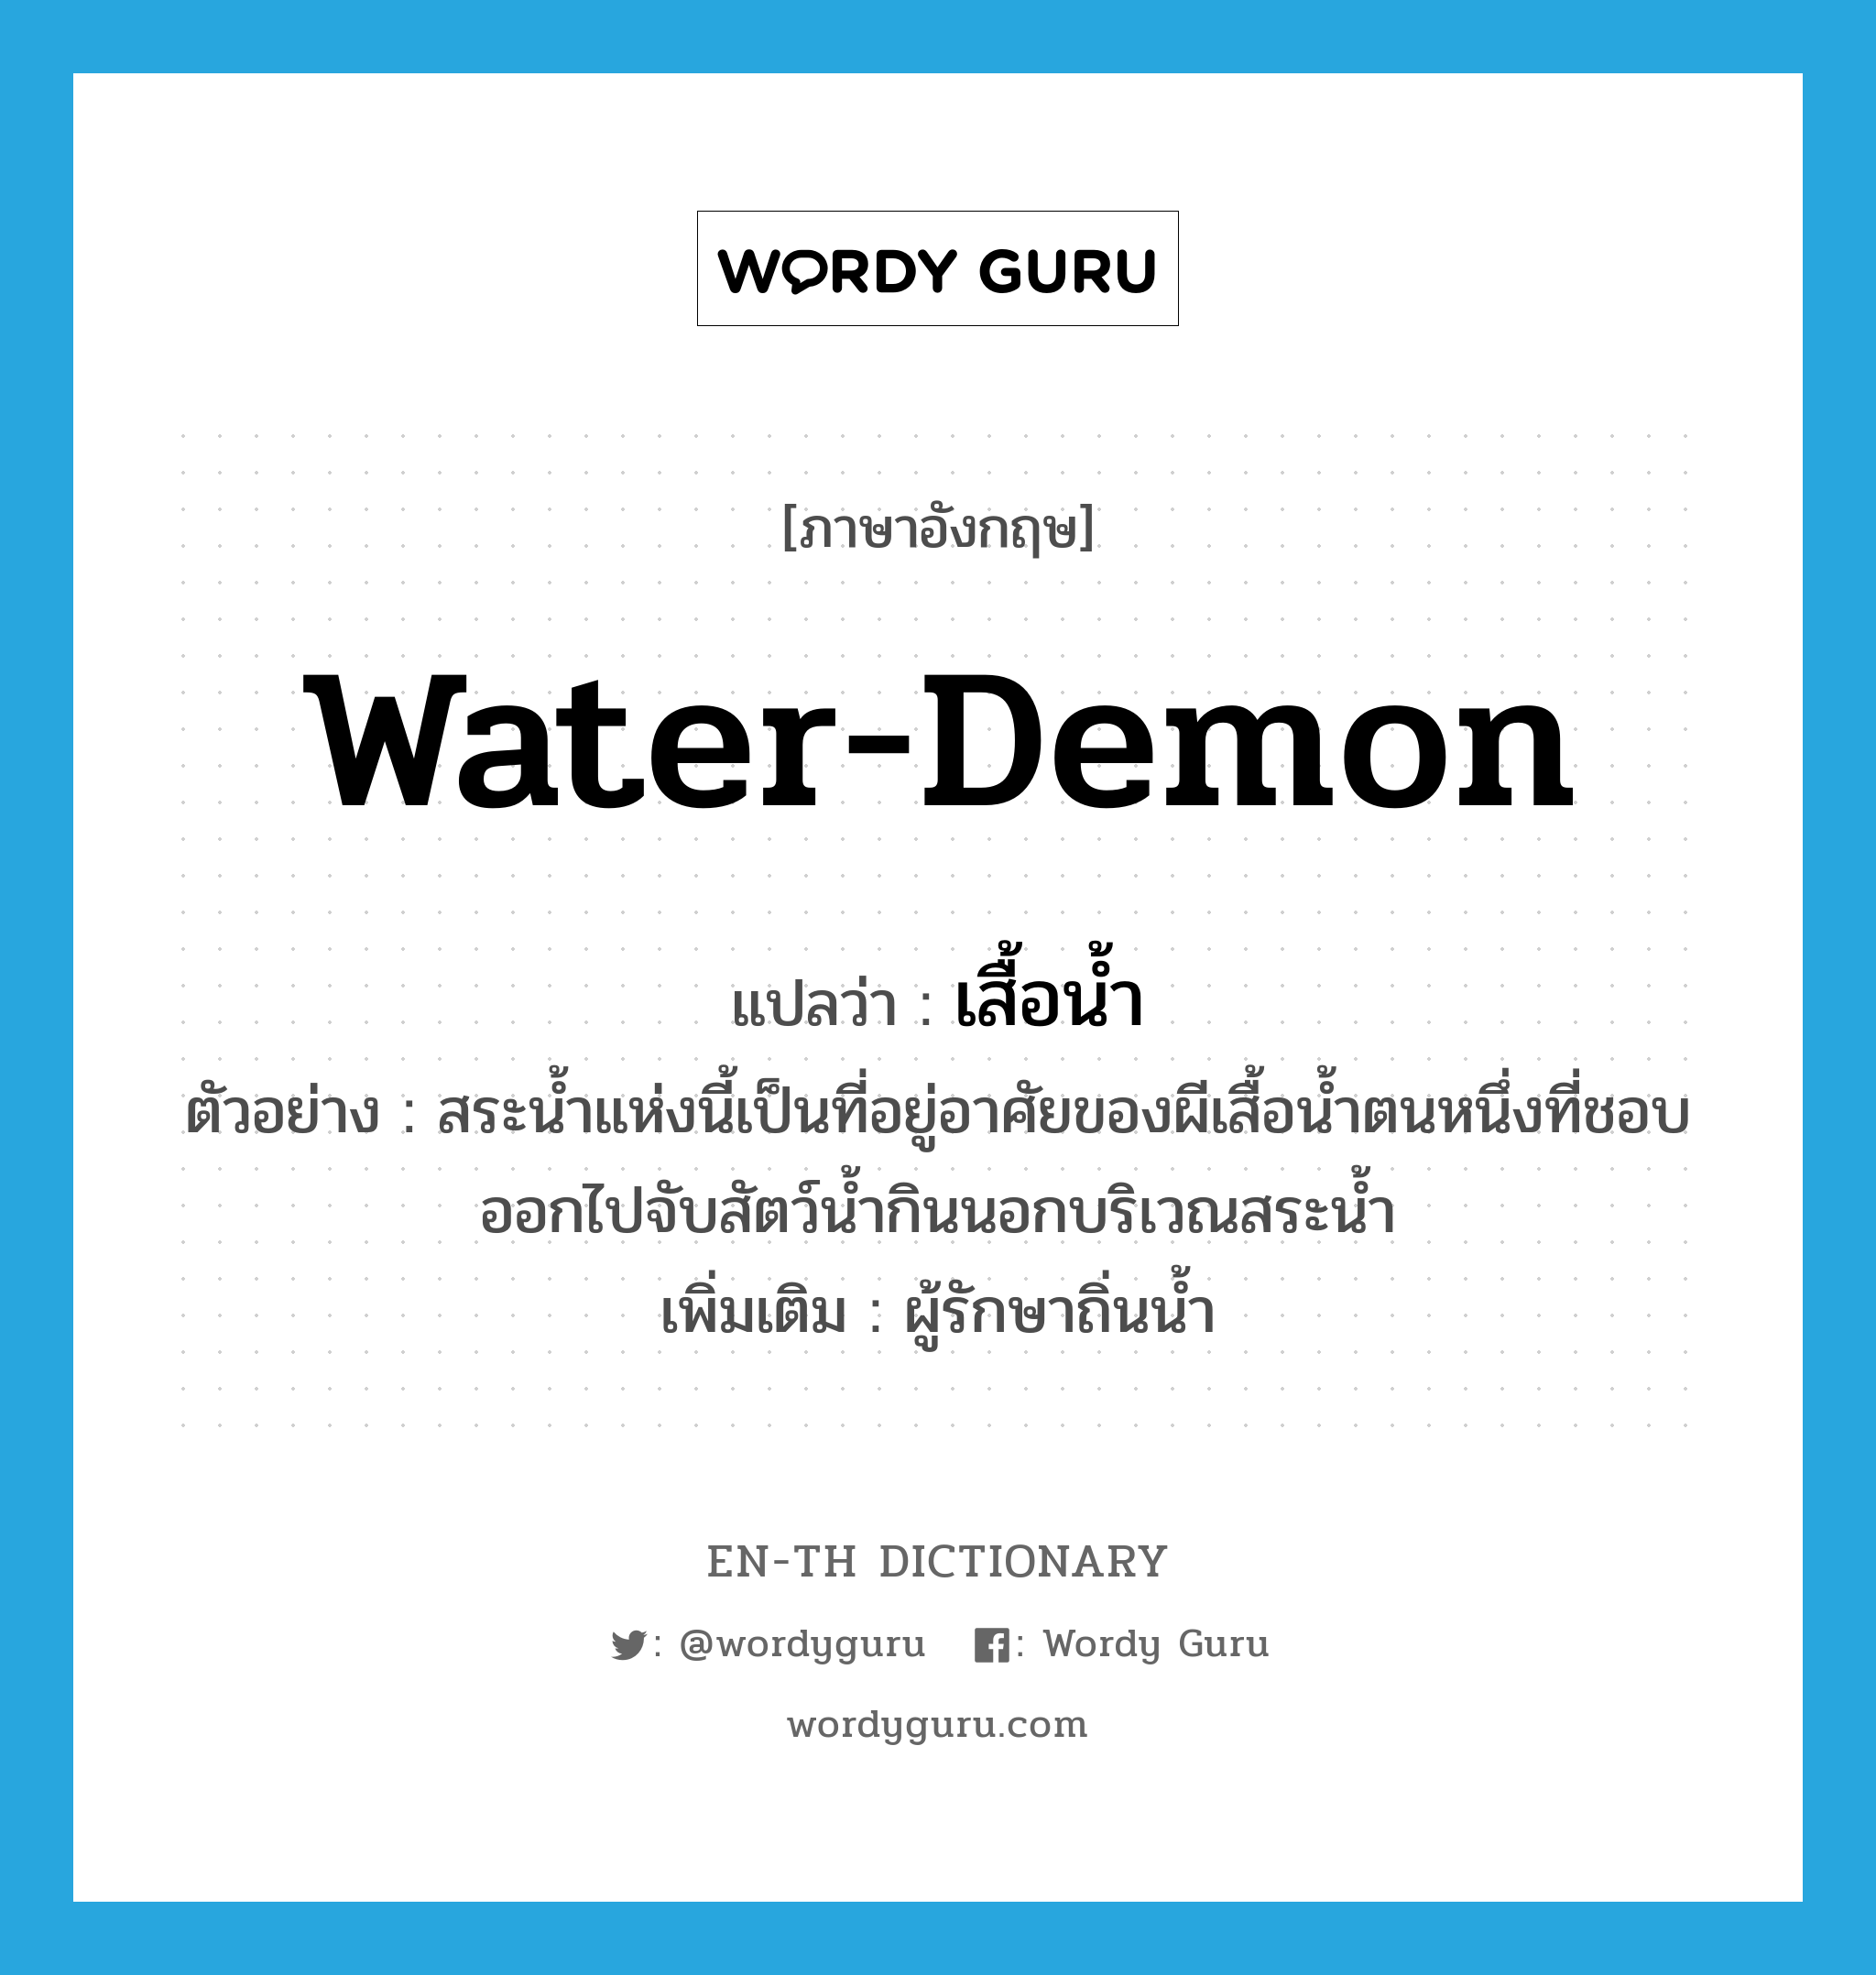 water-demon แปลว่า?, คำศัพท์ภาษาอังกฤษ water-demon แปลว่า เสื้อน้ำ ประเภท N ตัวอย่าง สระน้ำแห่งนี้เป็นที่อยู่อาศัยของผีเสื้อน้ำตนหนึ่งที่ชอบออกไปจับสัตว์น้ำกินนอกบริเวณสระน้ำ เพิ่มเติม ผู้รักษาถิ่นน้ำ หมวด N